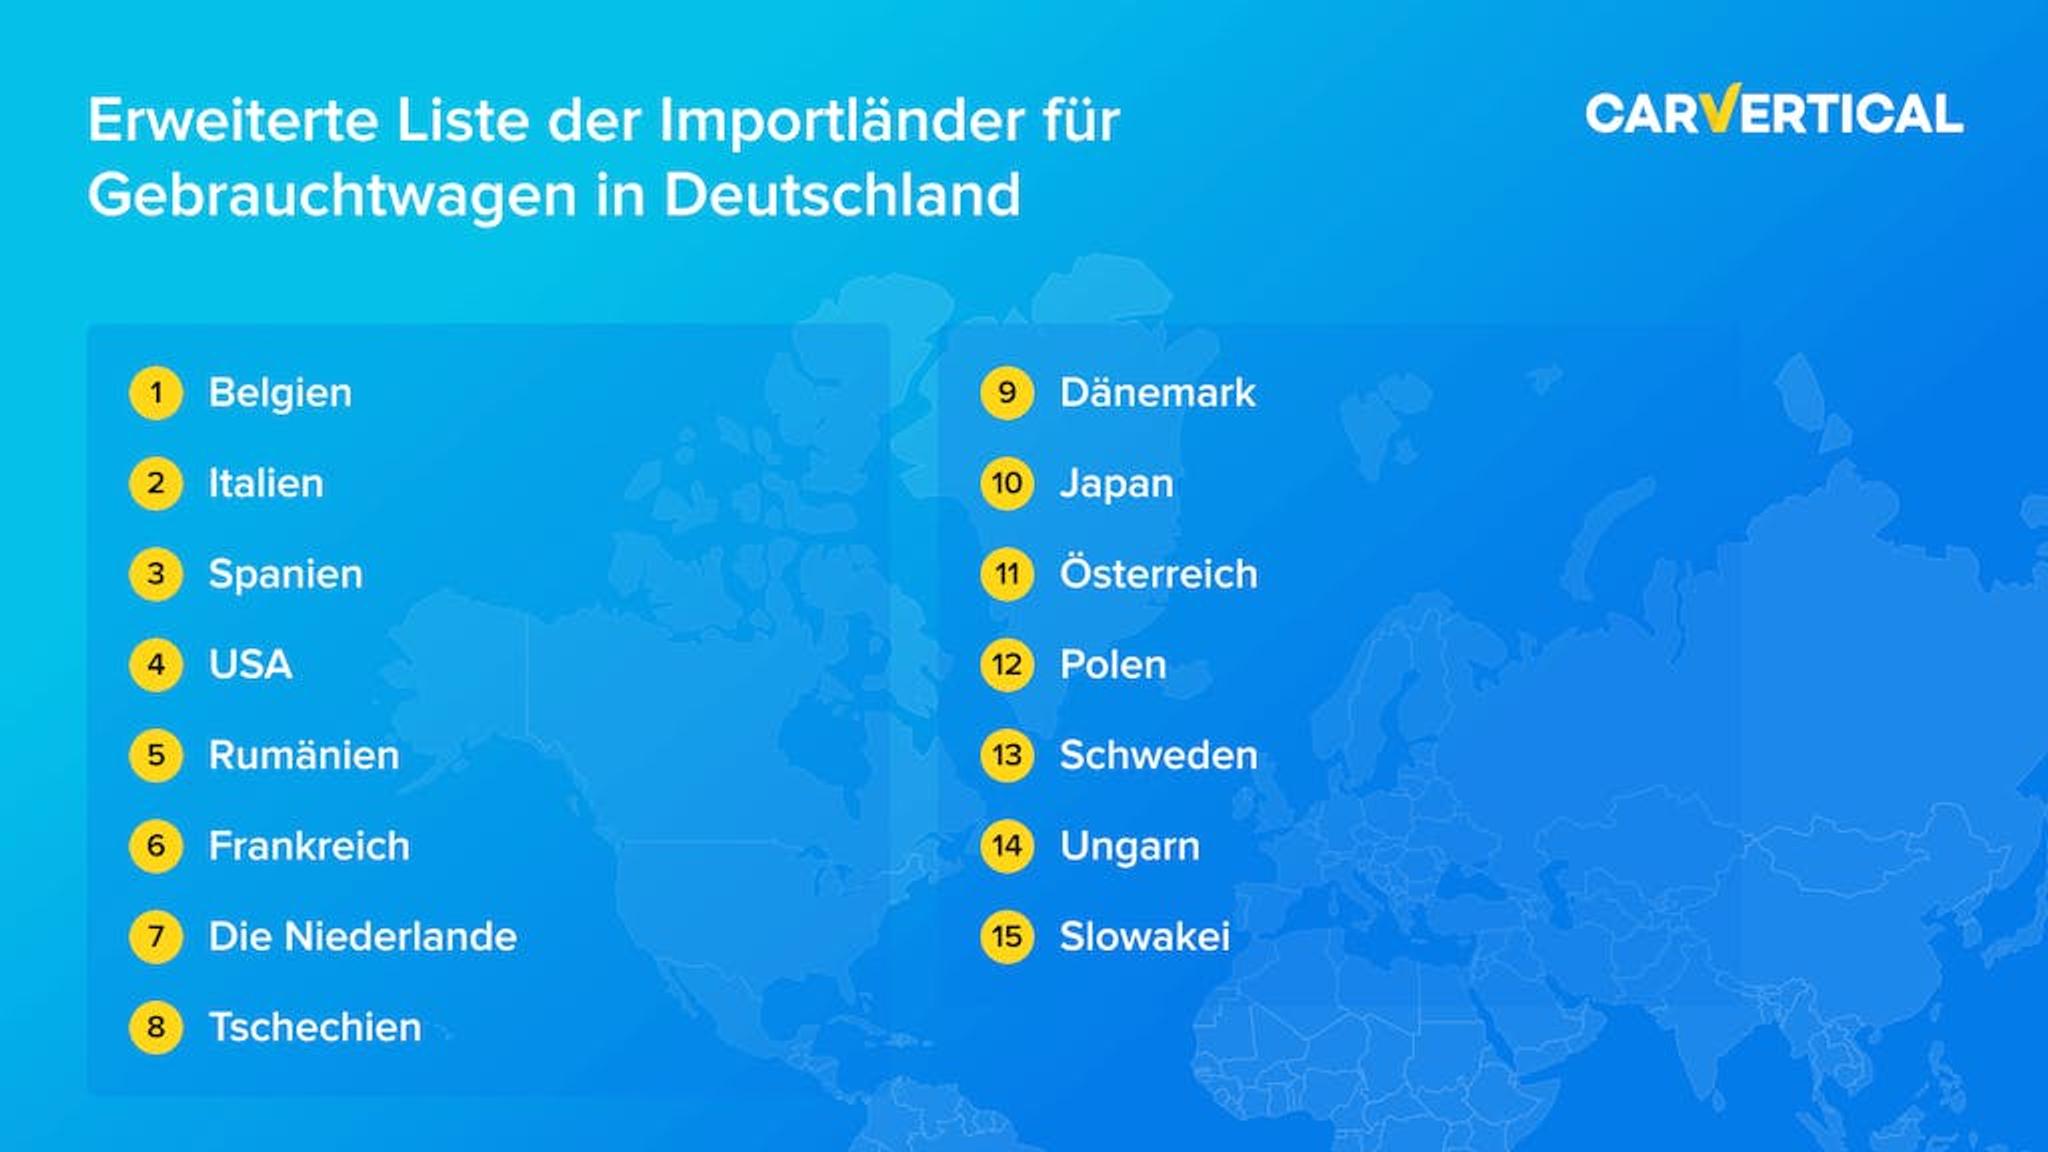 Erweiterte Liste der Importlander fur Gebrauchtwagen in Deutschland